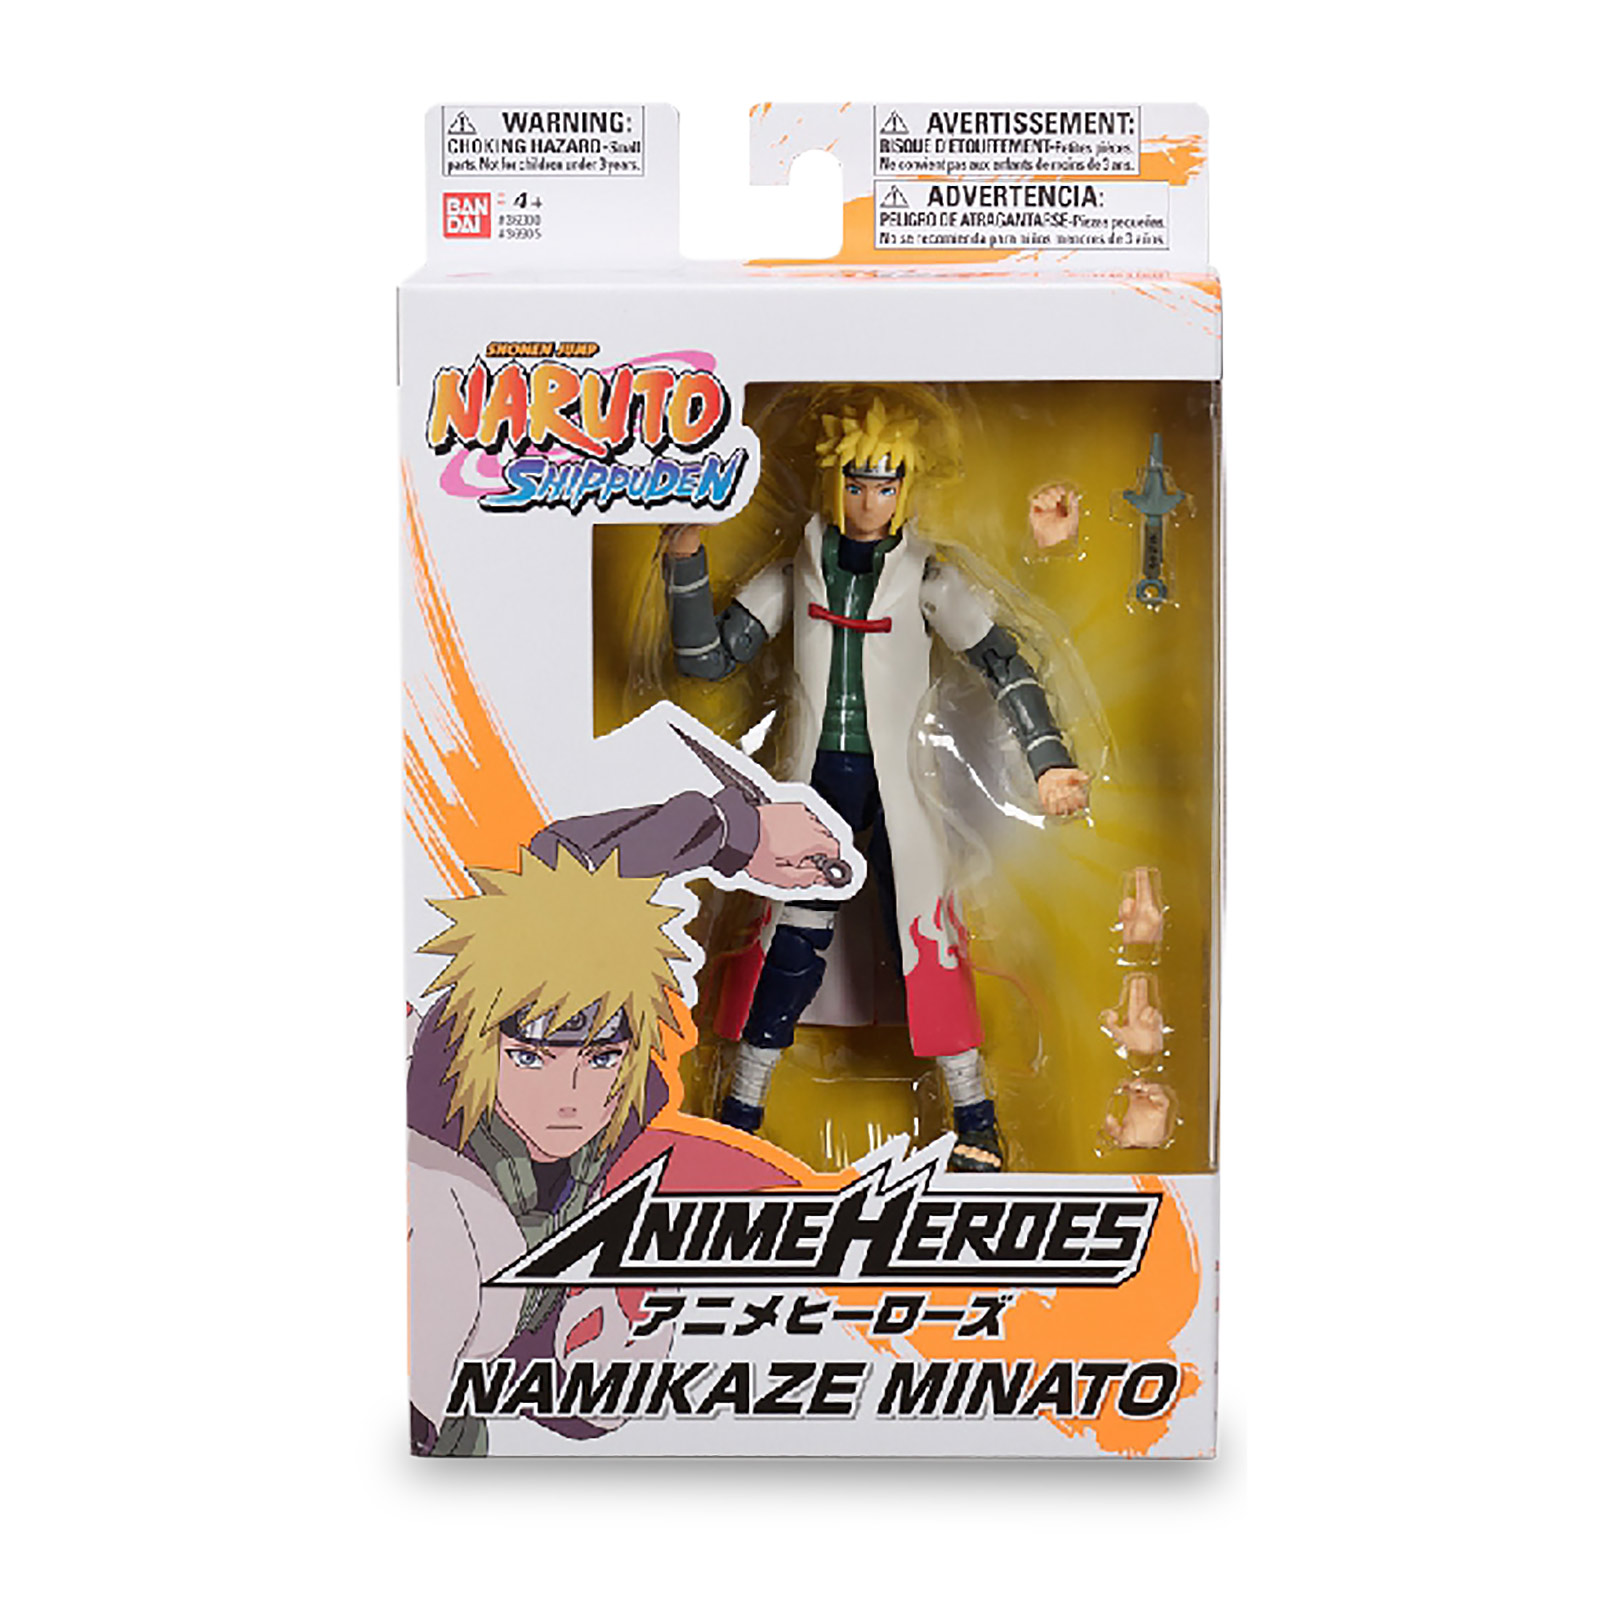 Naruto Shippuden - Namikaze Minato Anime Heroes Actionfigur